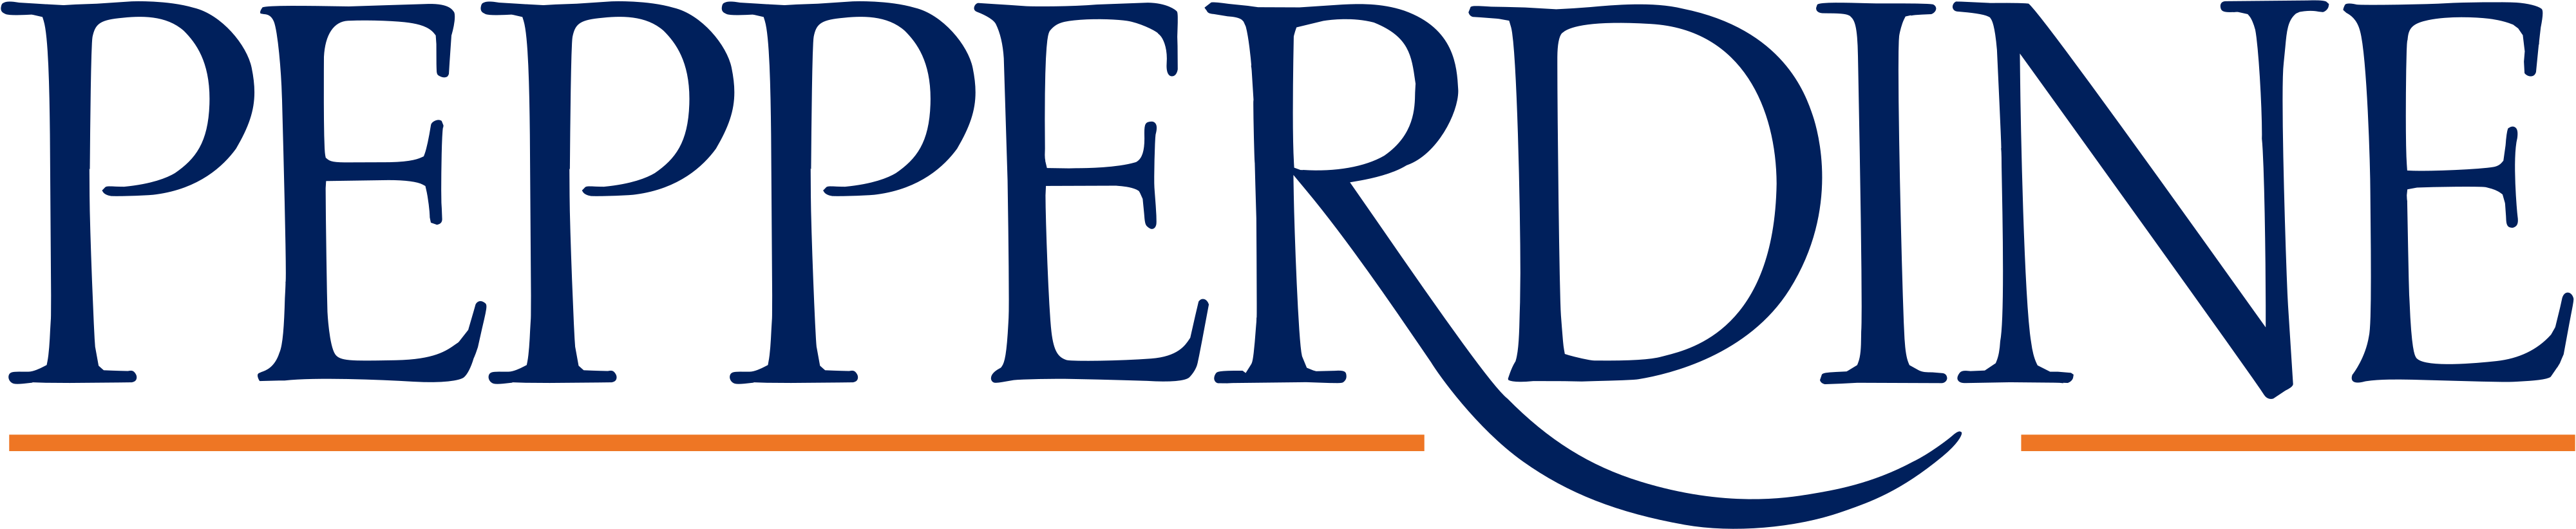 pepperdine university malibu logo